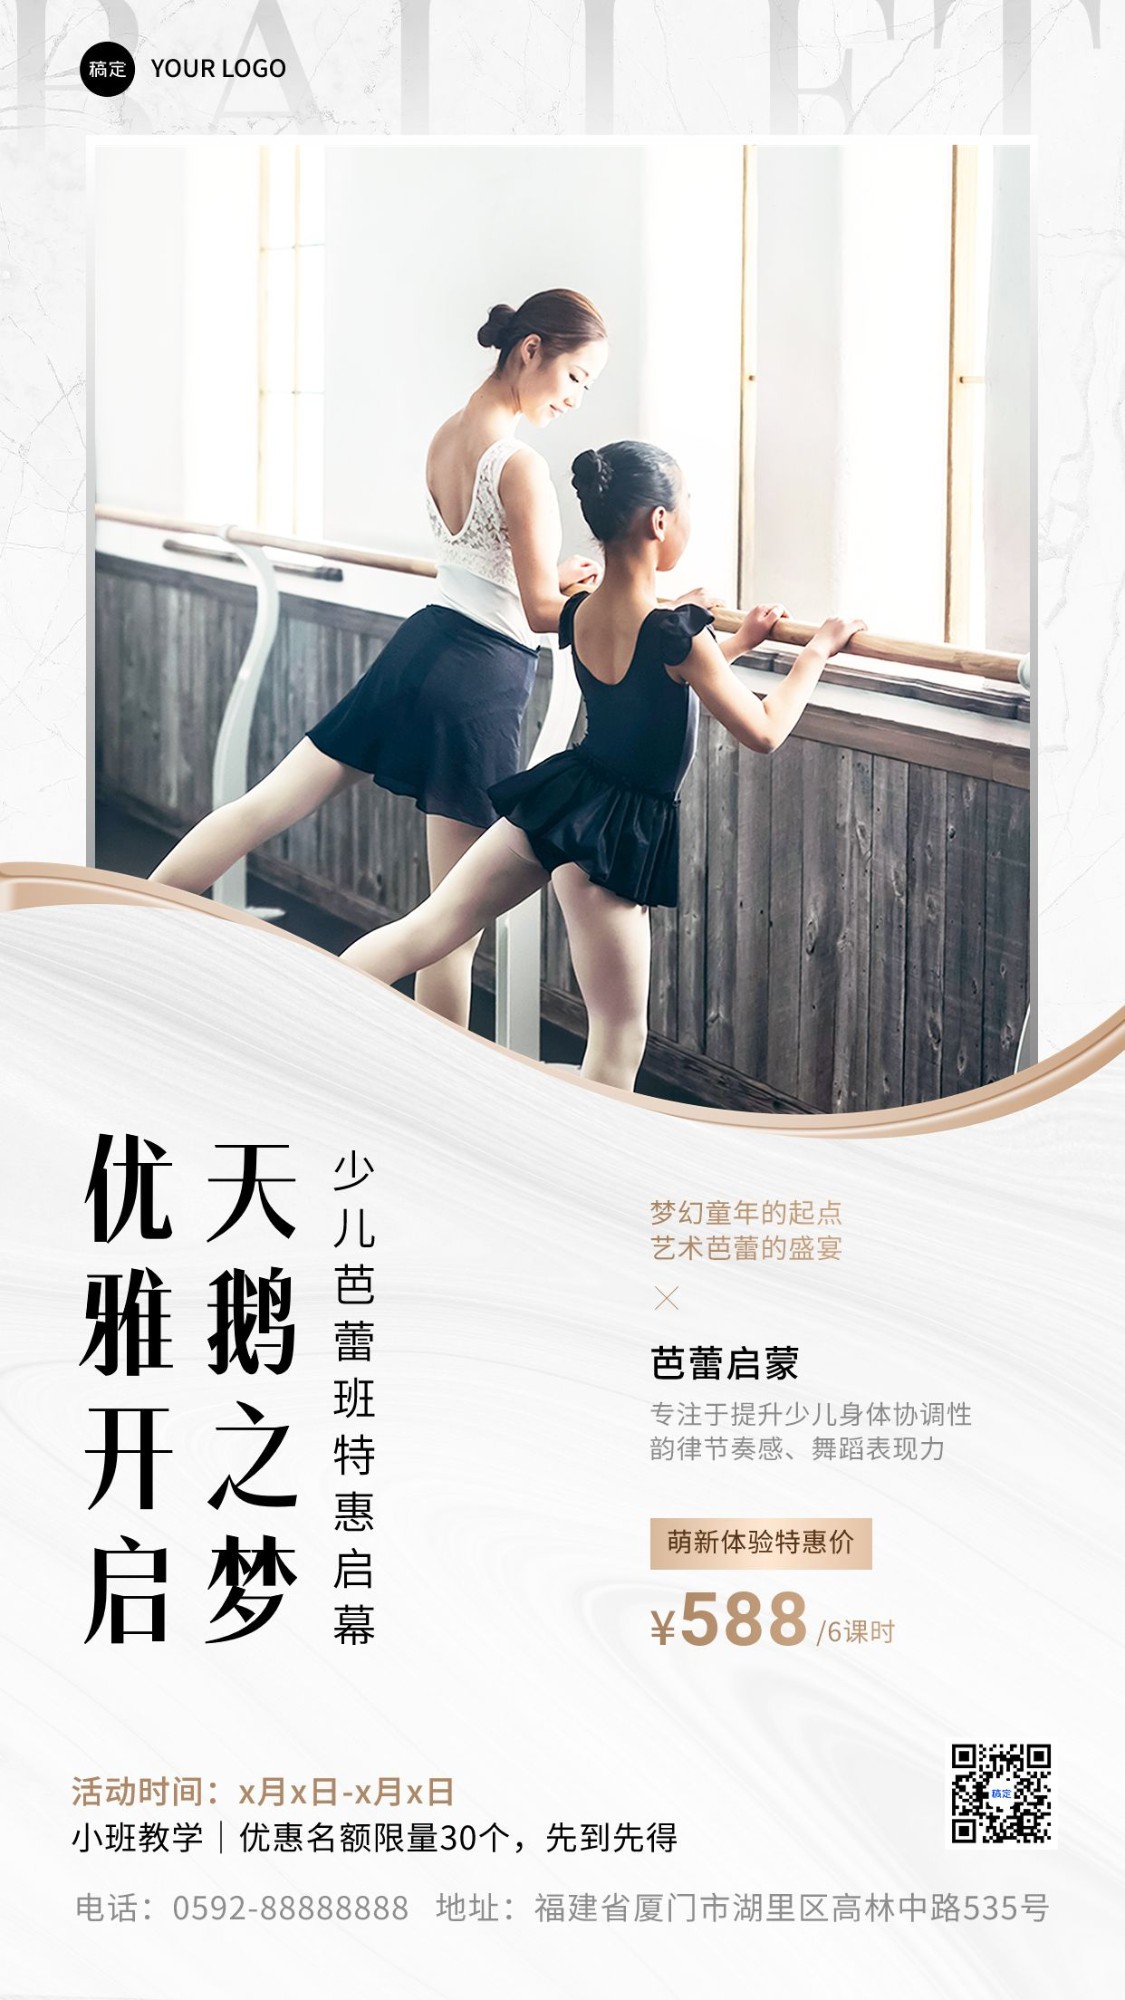 少儿芭蕾兴趣培训机构招生引流课程宣传简约文艺风手机海报